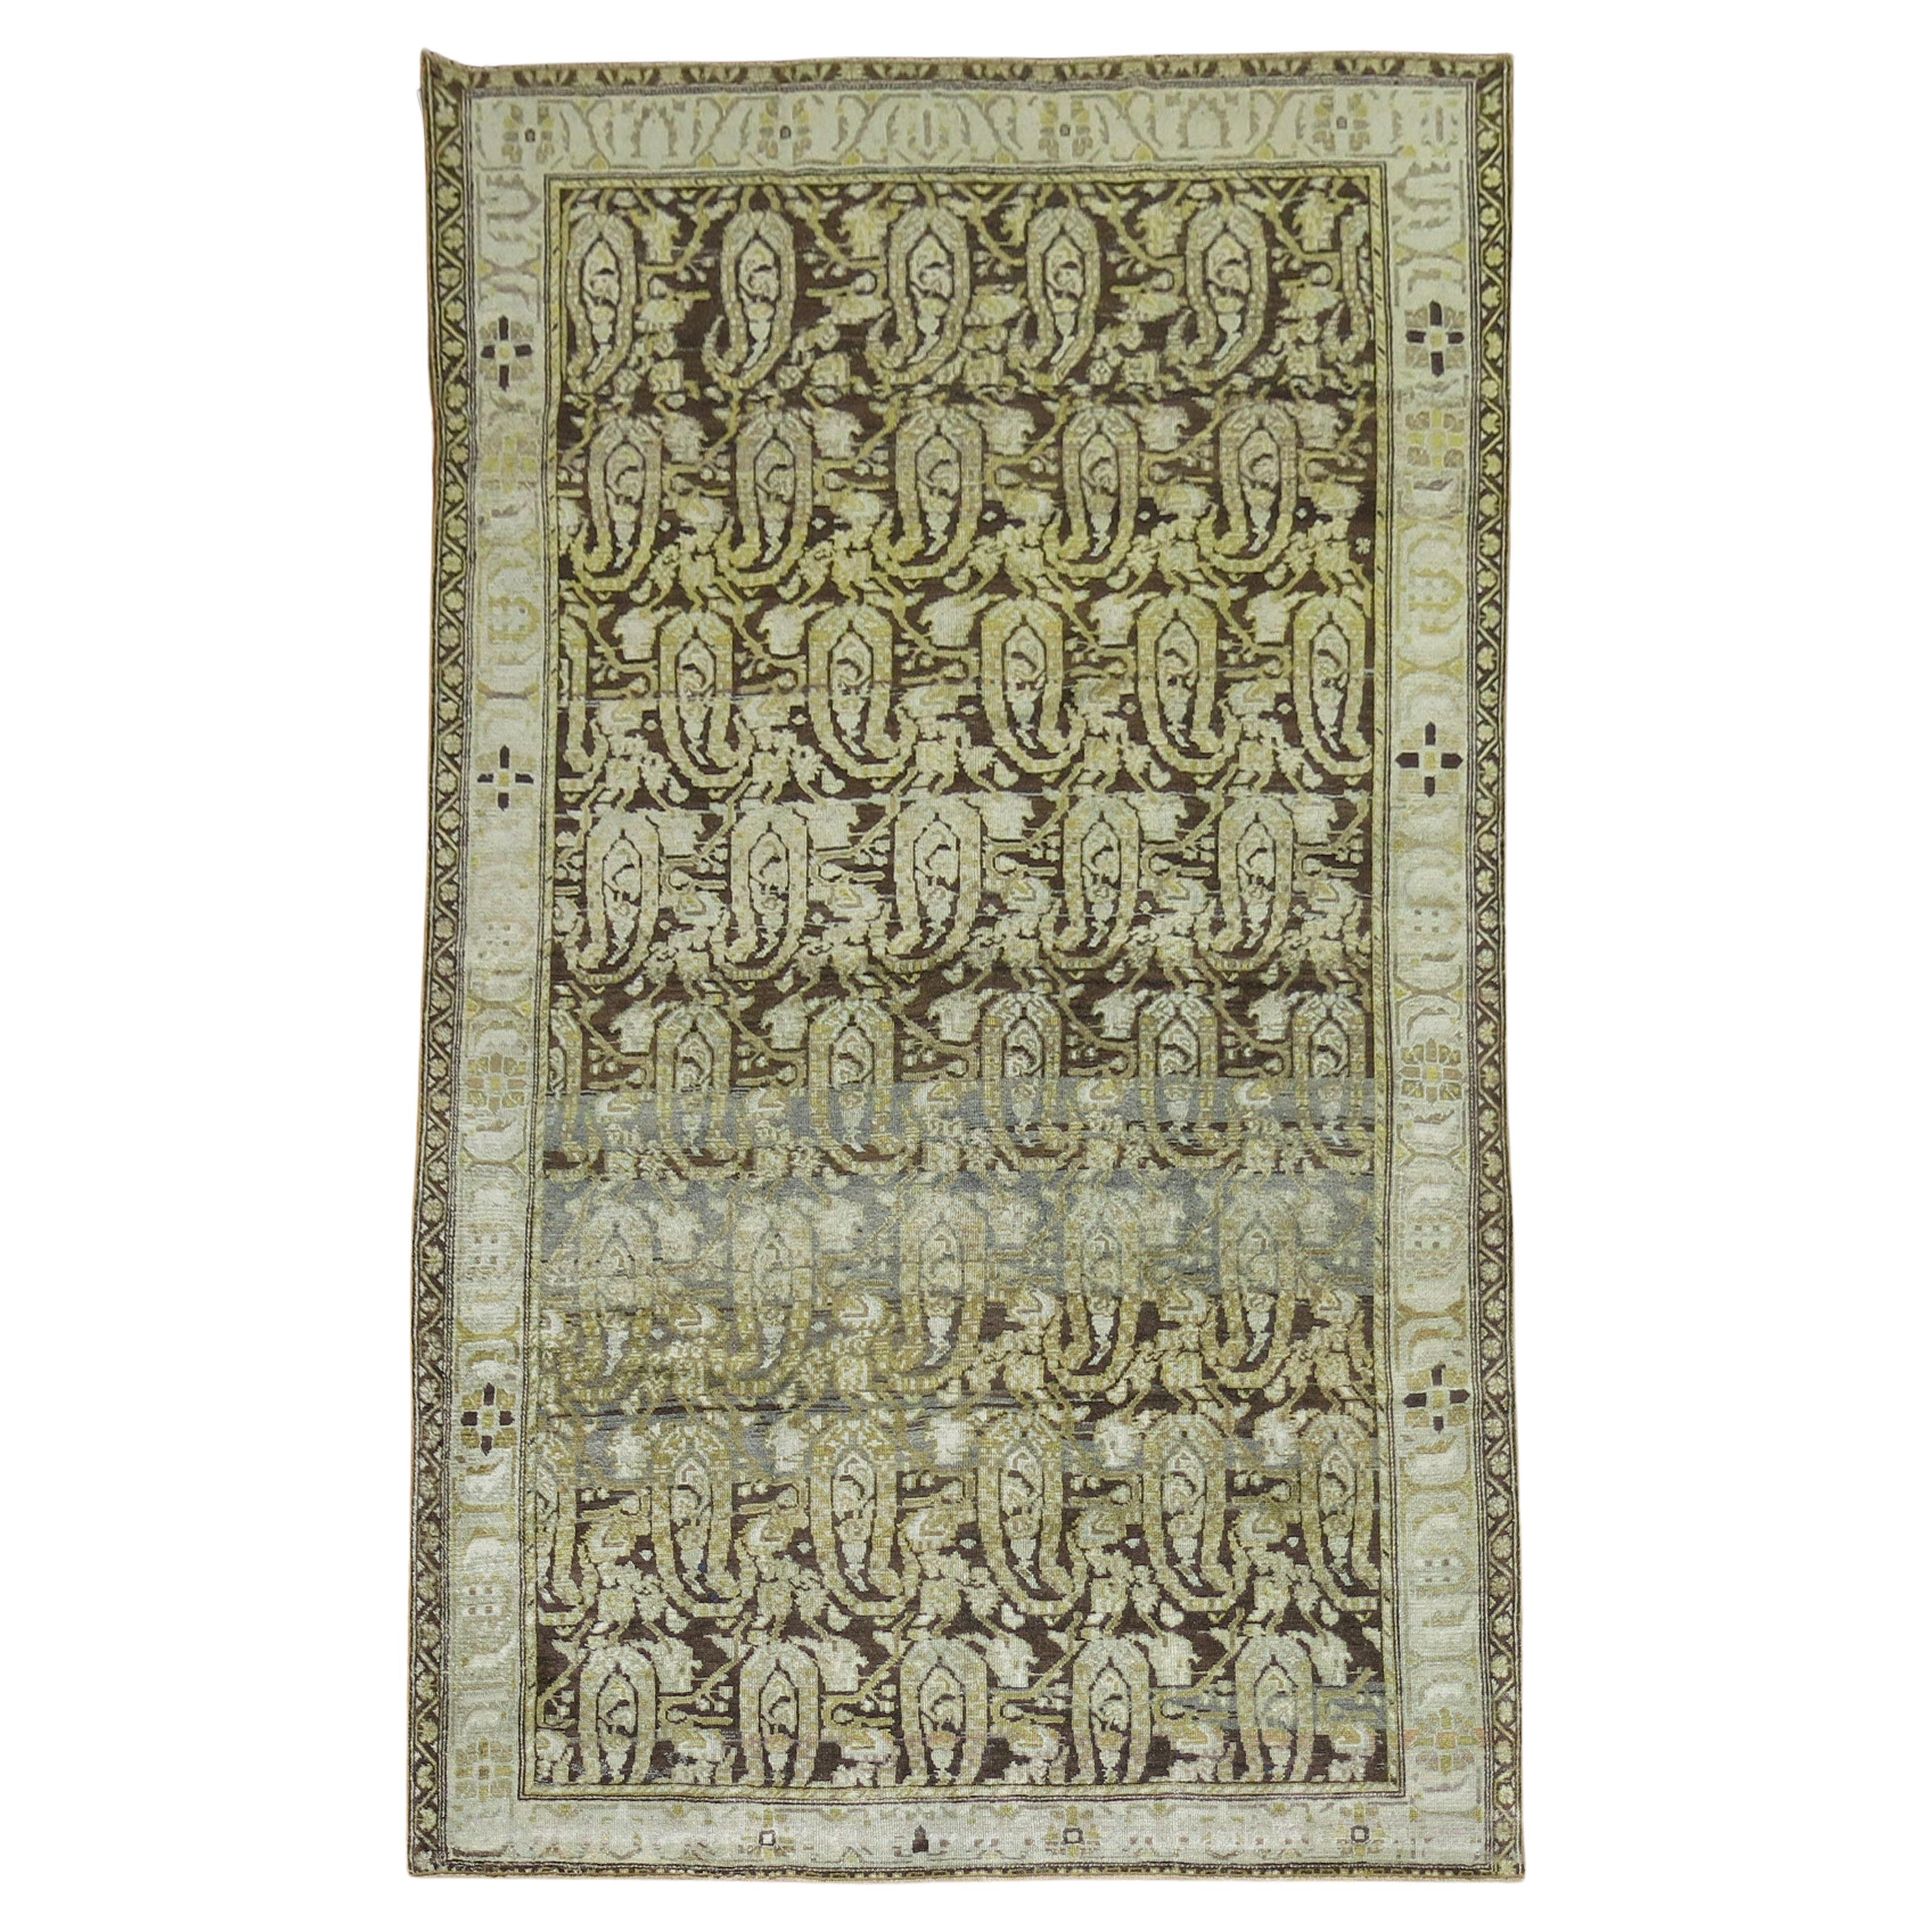 Malayer-Teppich aus persischem Holz